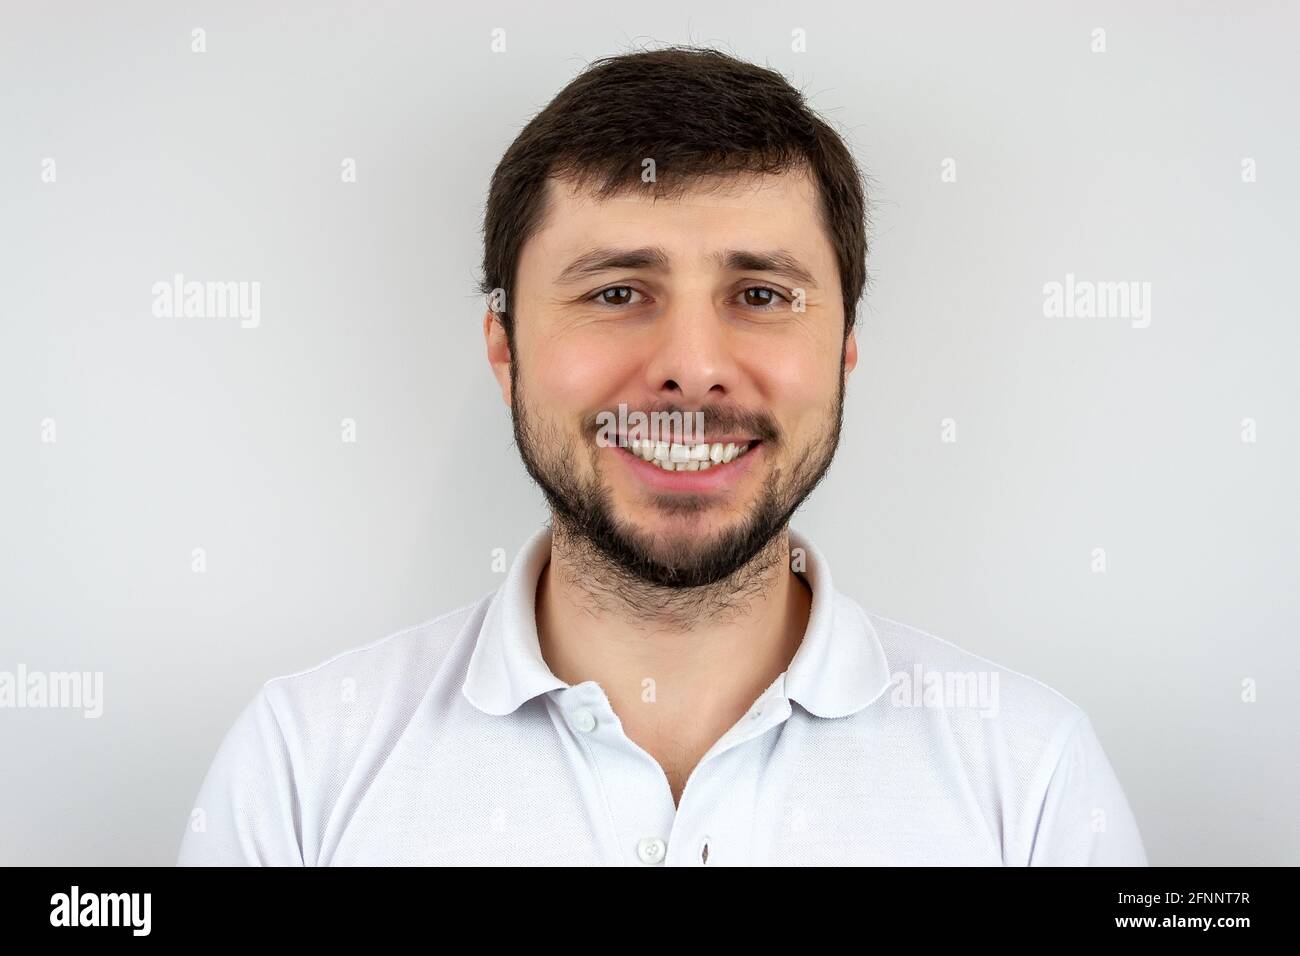 Un hombre barbudo muy feliz y sonriente con ojos marrones en una camiseta blanca Foto de stock